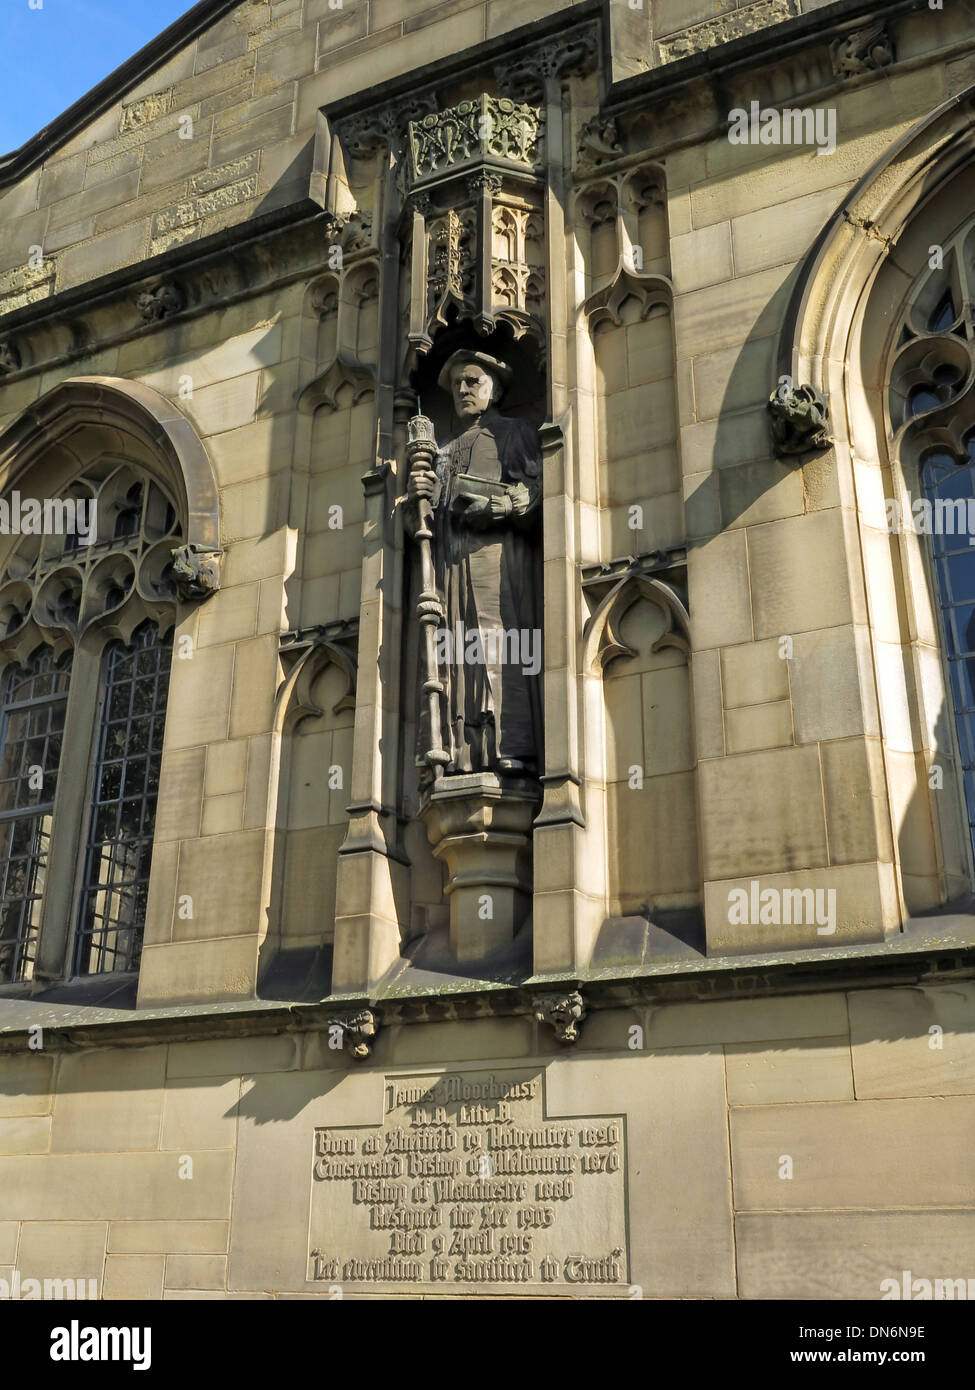 James Moorhouse statua Cattedrale di Manchester Inghilterra England Regno Unito Foto Stock